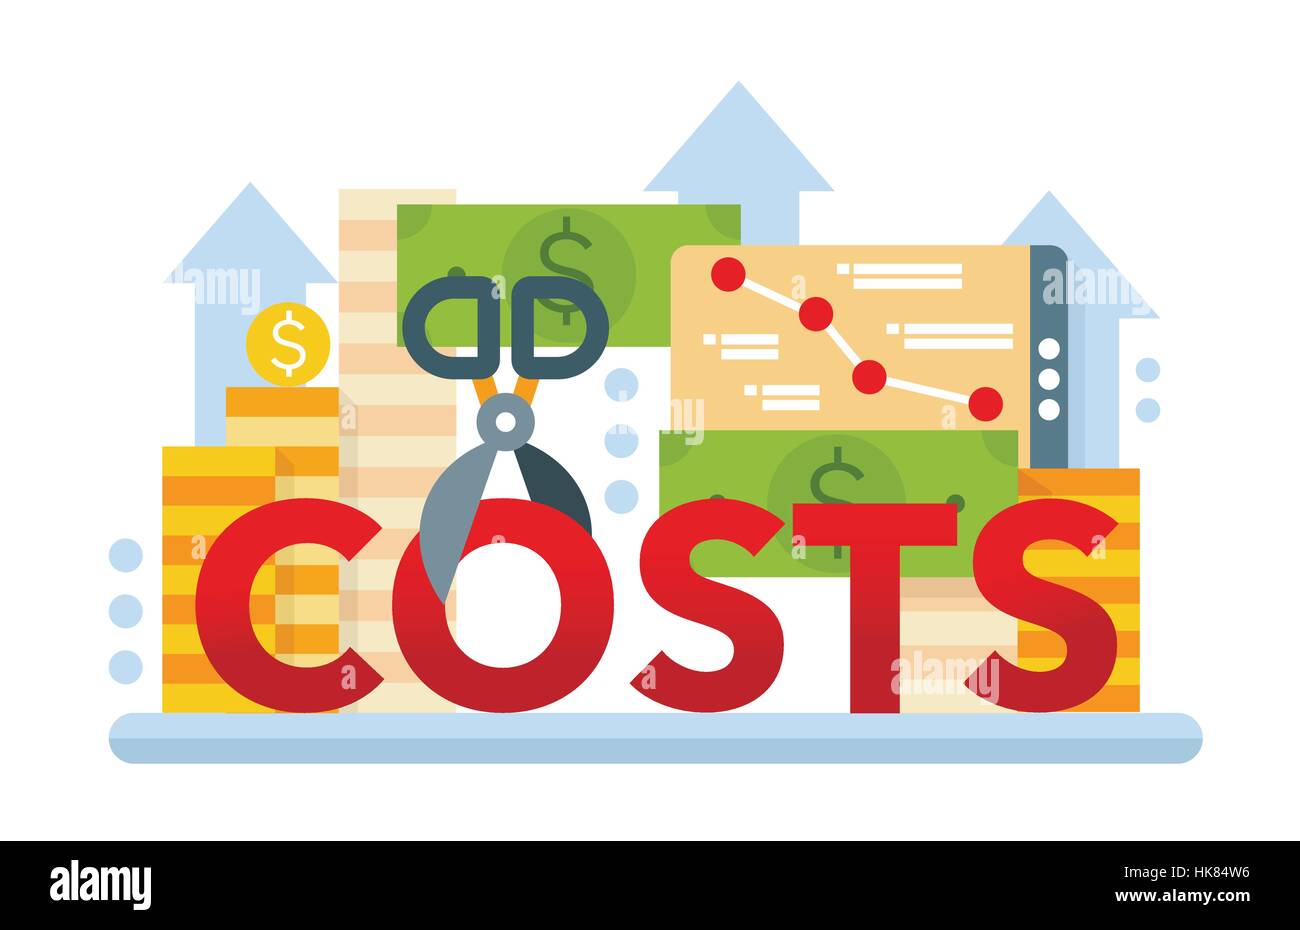 Reduce Costs - flat design website banner Stock Vector